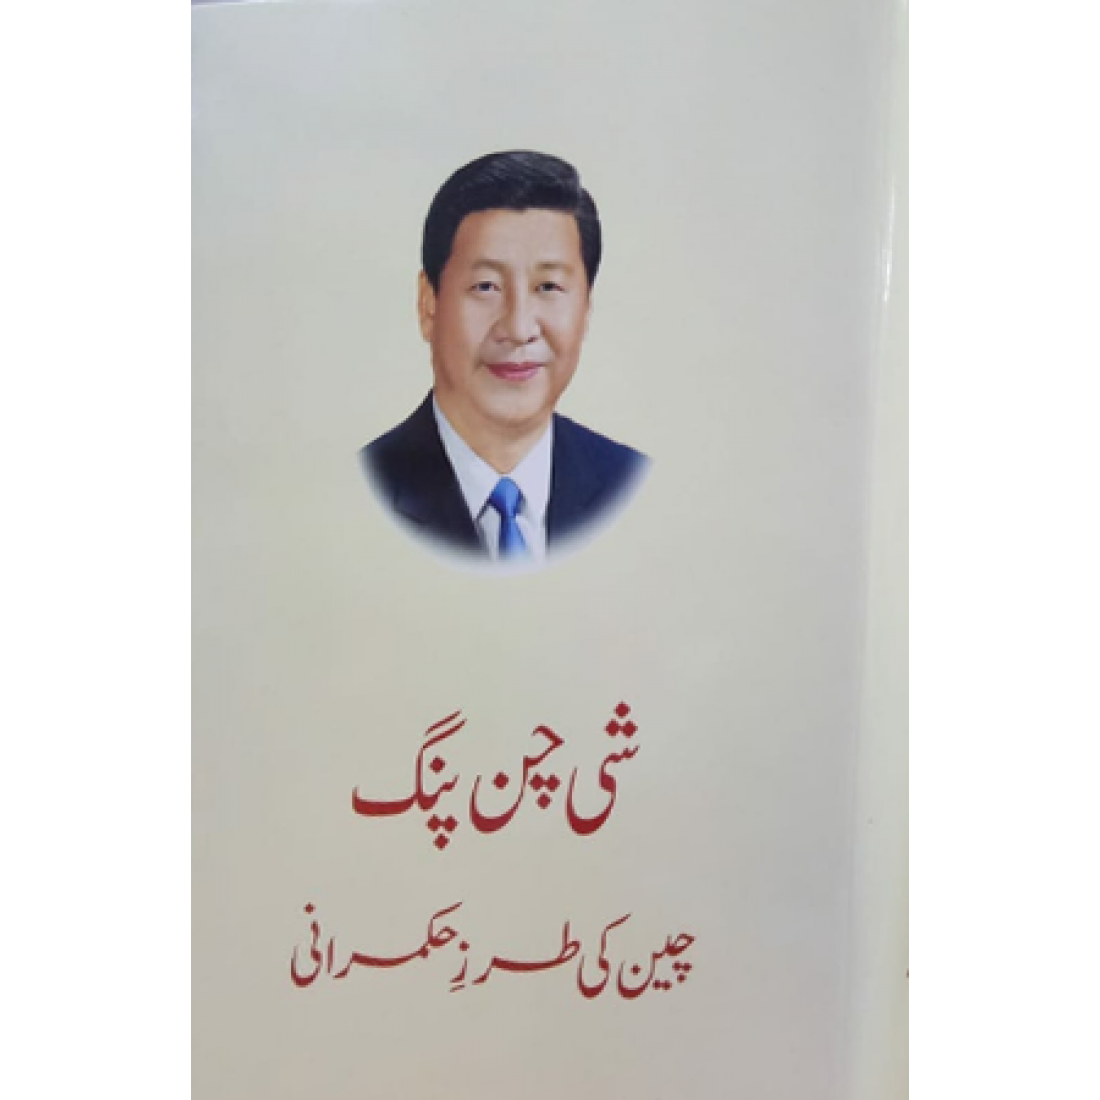 Xi Jinping (Urdu Version)